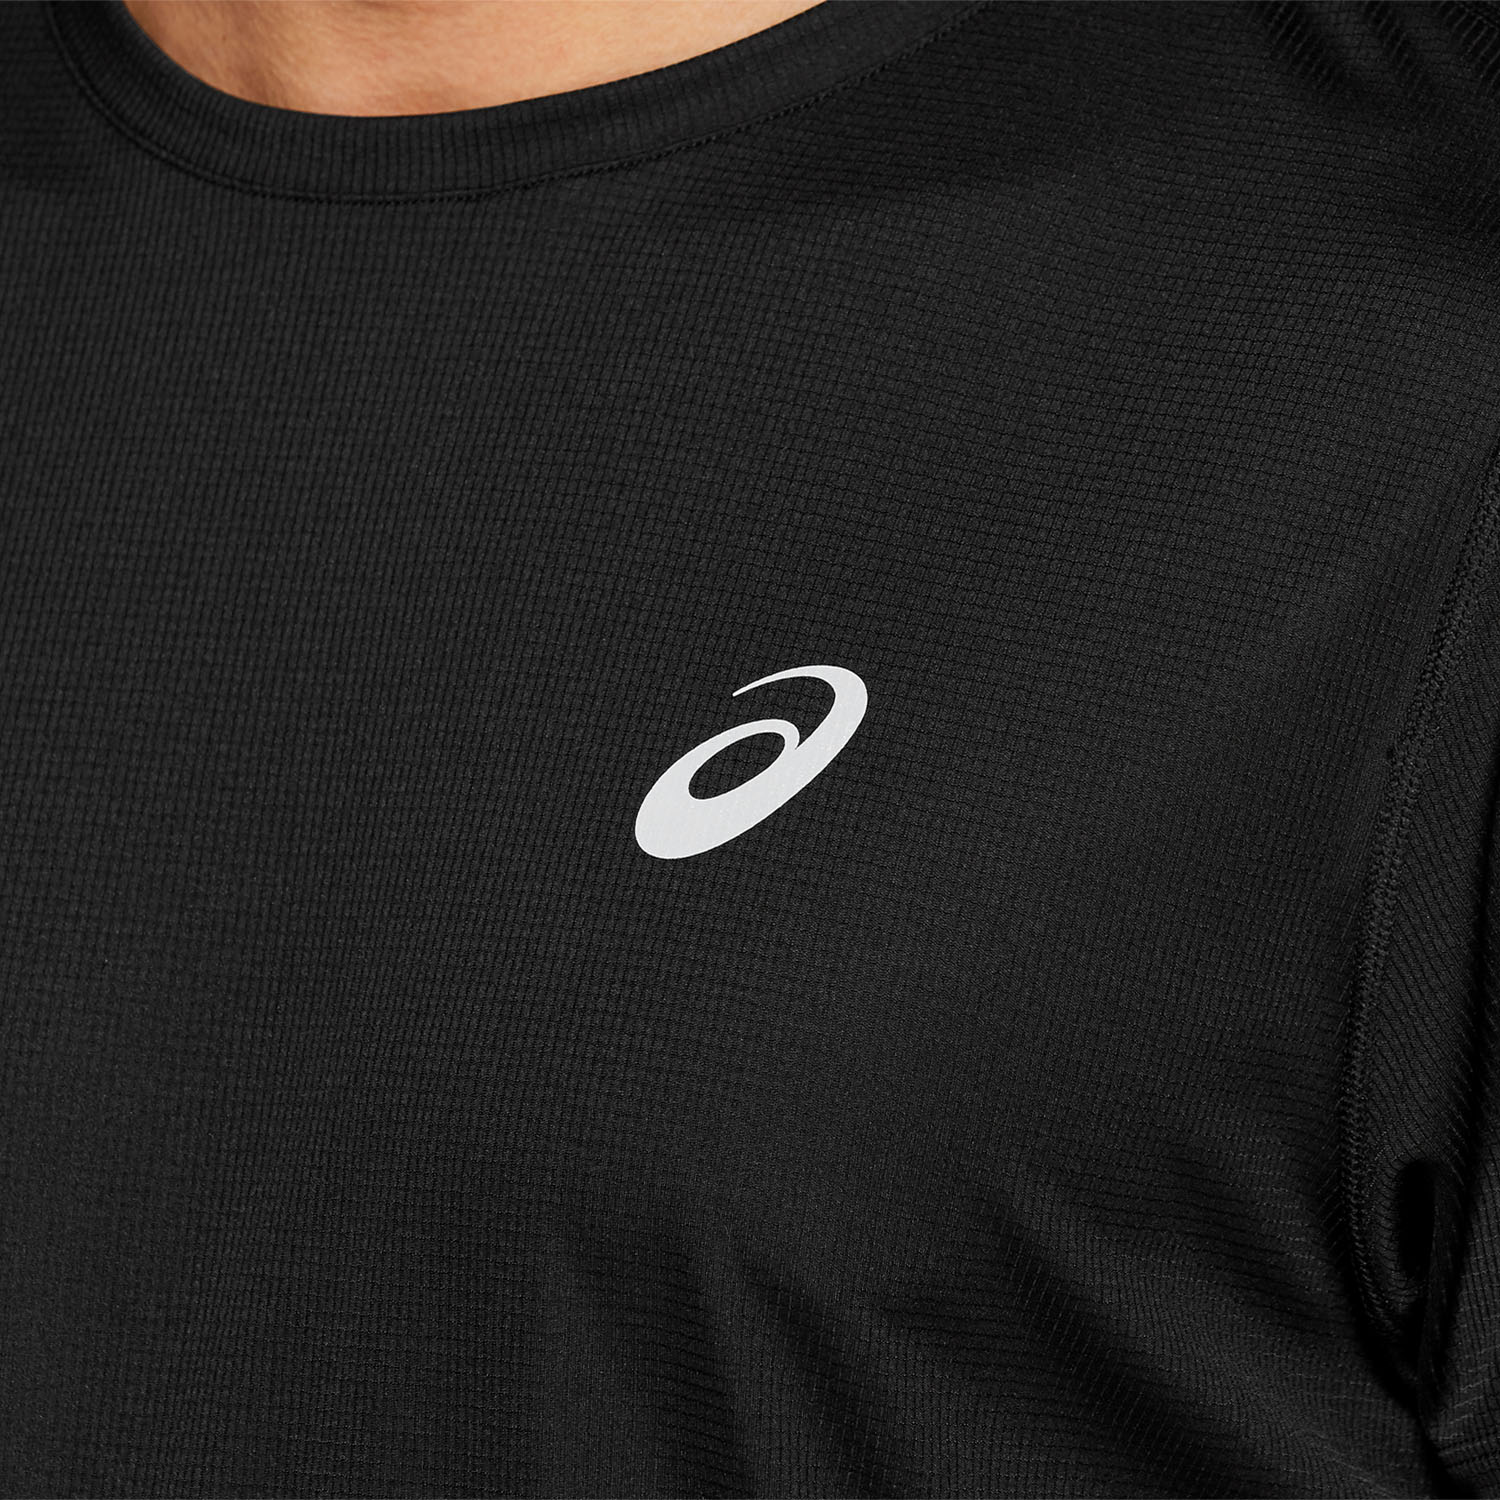 Asics Core Knit T-Shirt - Performance Black